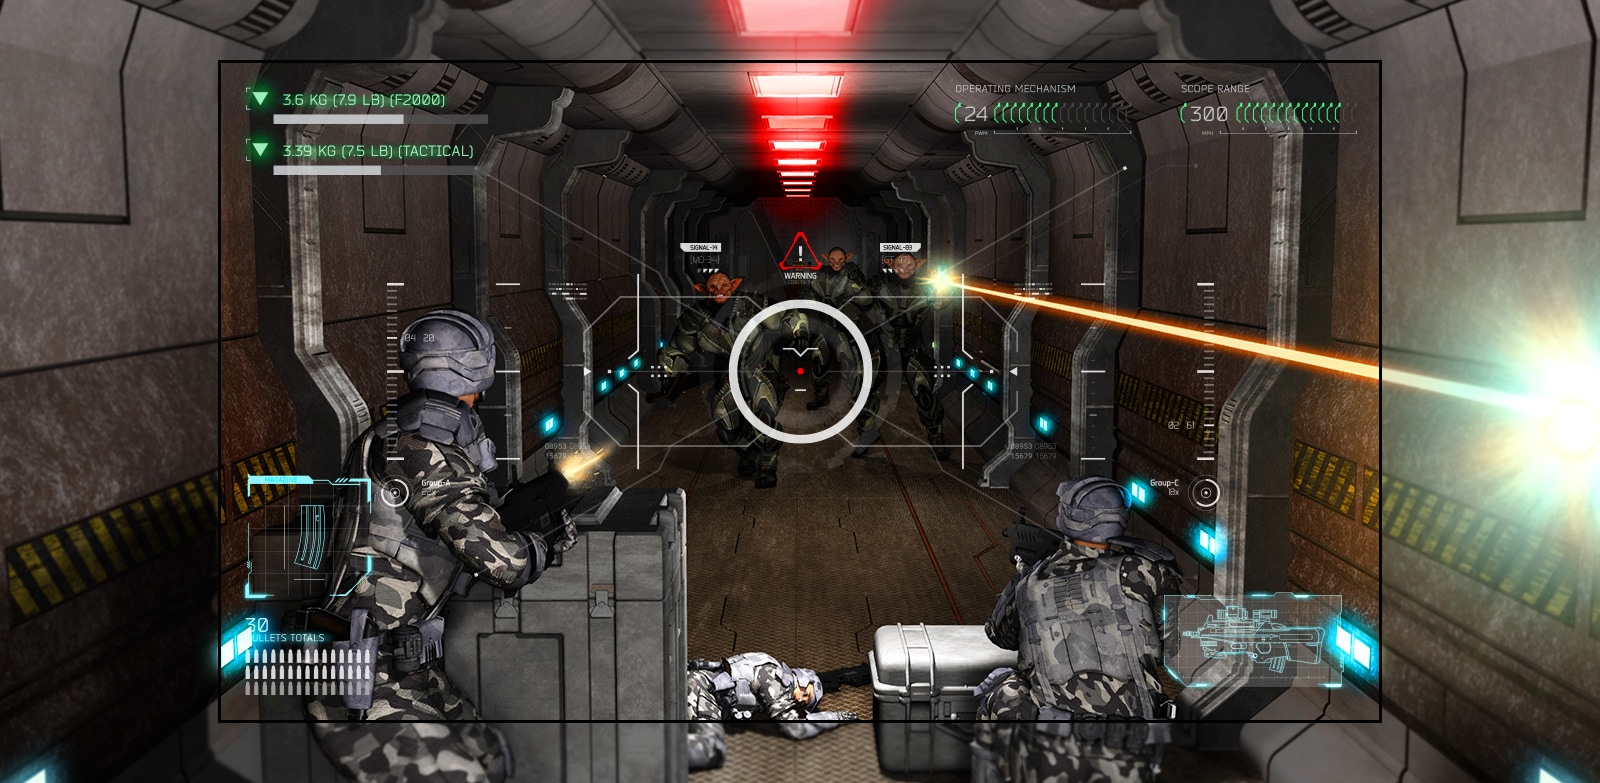 La TV mostra una scena di un gioco di tiro in cui il giocatore viene sconfitto dagli alieni con le armi.